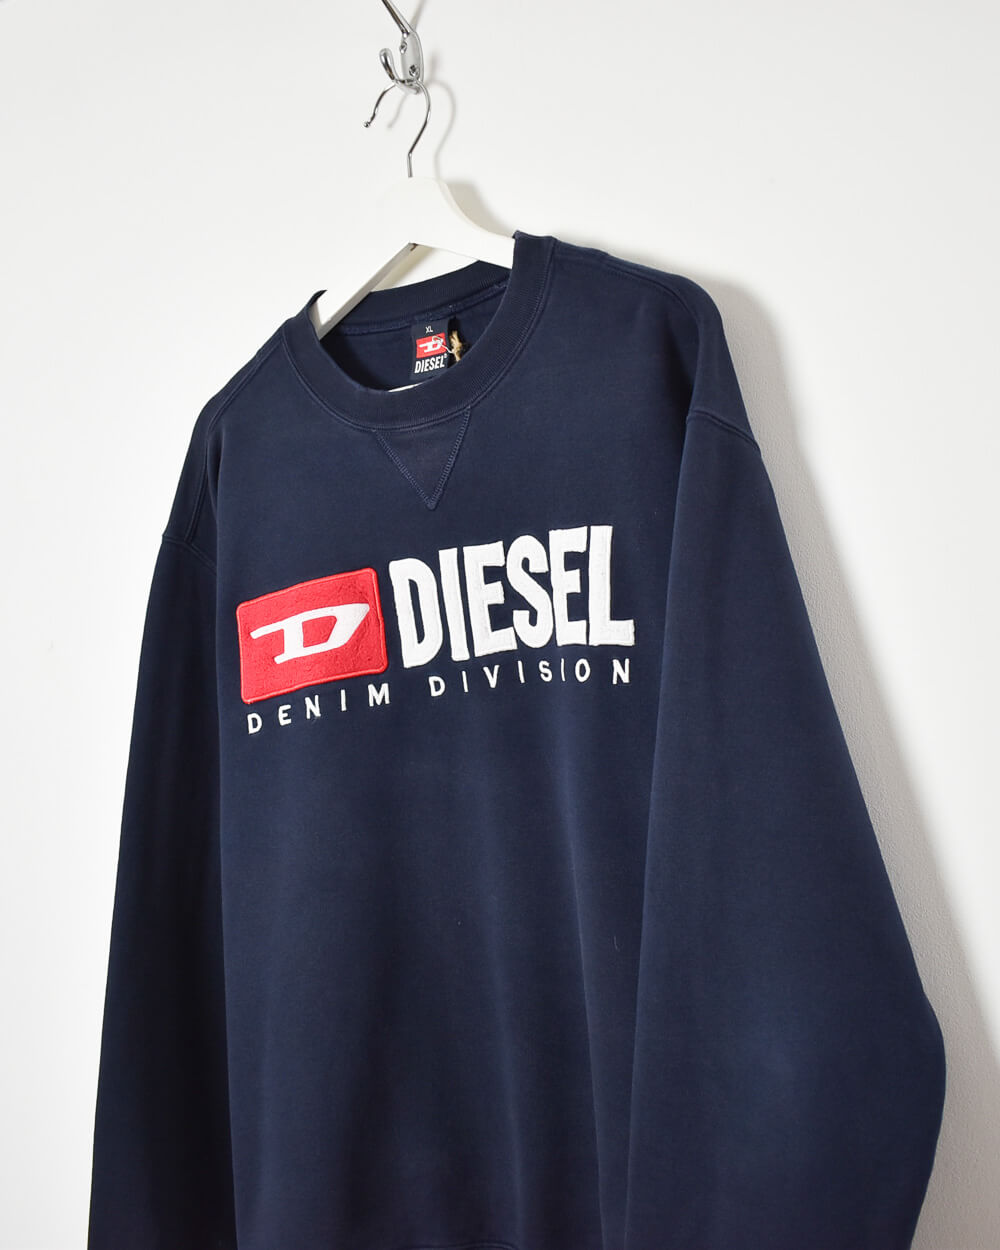 Navy Diesel Denim Division Sweatshirt - X-Large